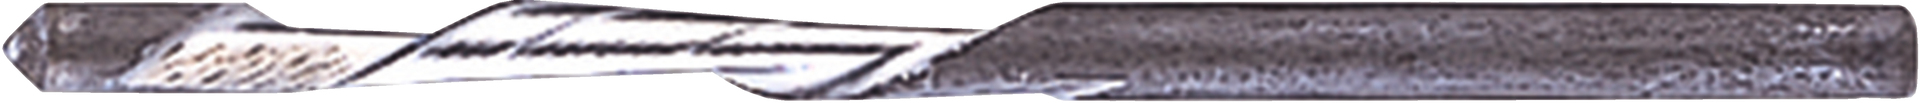 Schneidebit 3,1mm (1/8) H/K